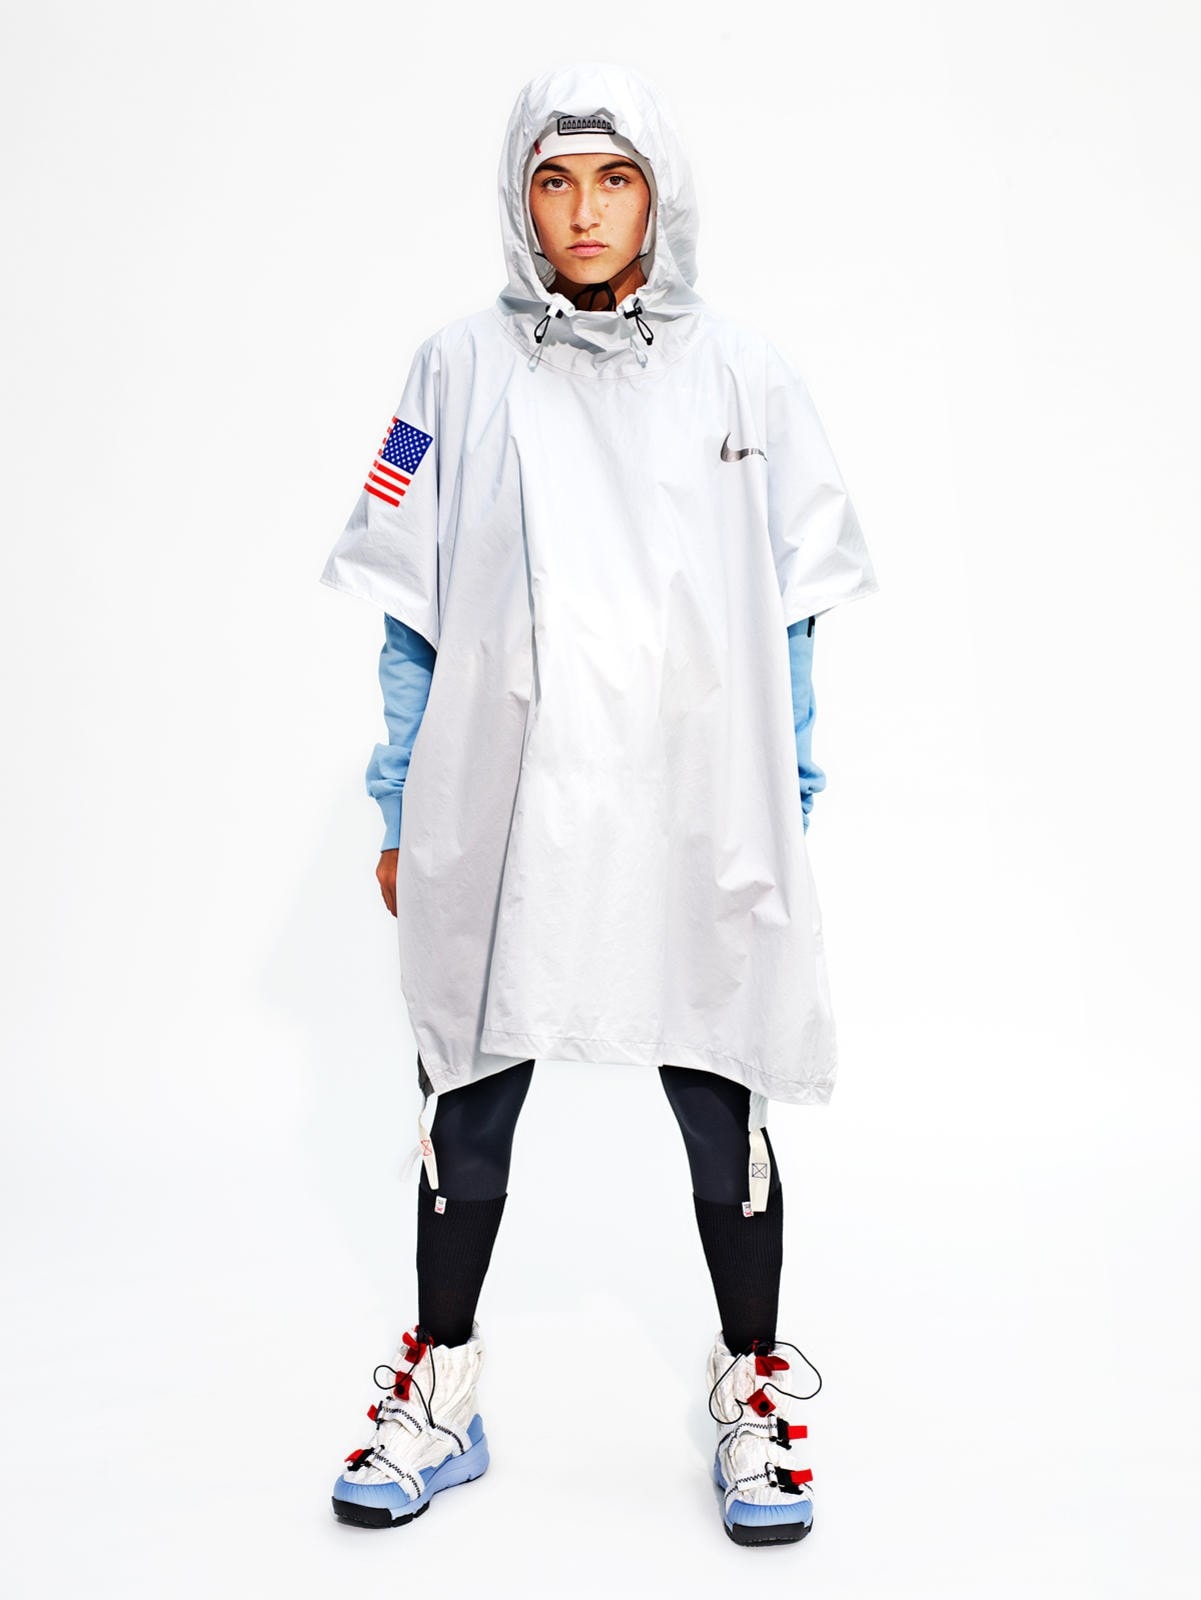 Tom Sachs x Nike Craft 全新太空聯乘系列單品圖片公開